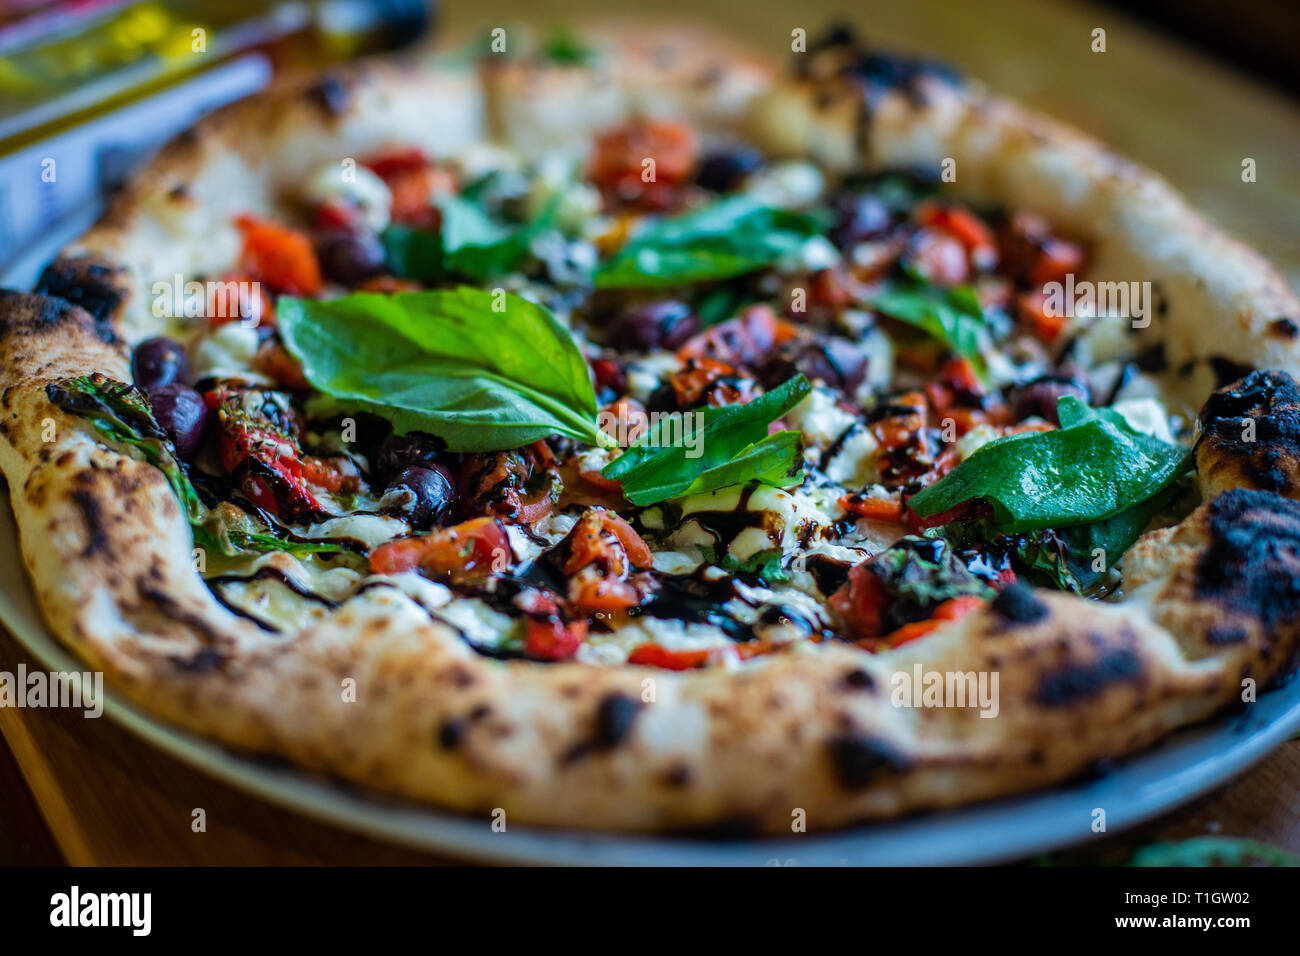 Authentische italienische neapolitanischen Stil Holzofen Pizza auf der Tabelle in einer Pizzeria Trattoria Restaurant Stockfoto